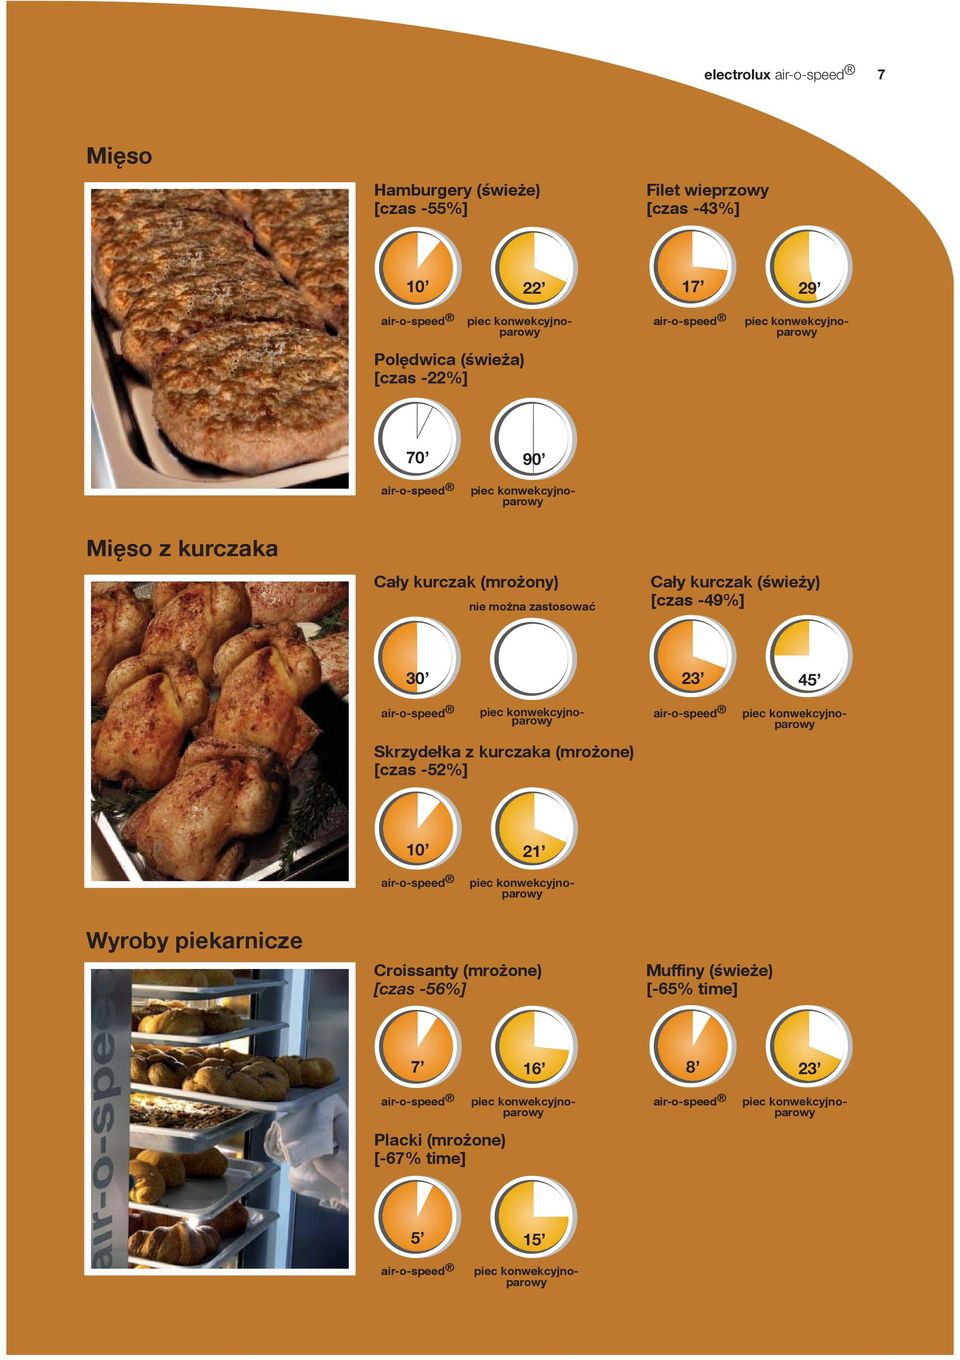 (świeży) [czas -49%] 30 23 45 Skrzydełka z kurczaka (mrożone) [czas -52%] 10 21 Wyroby piekarnicze